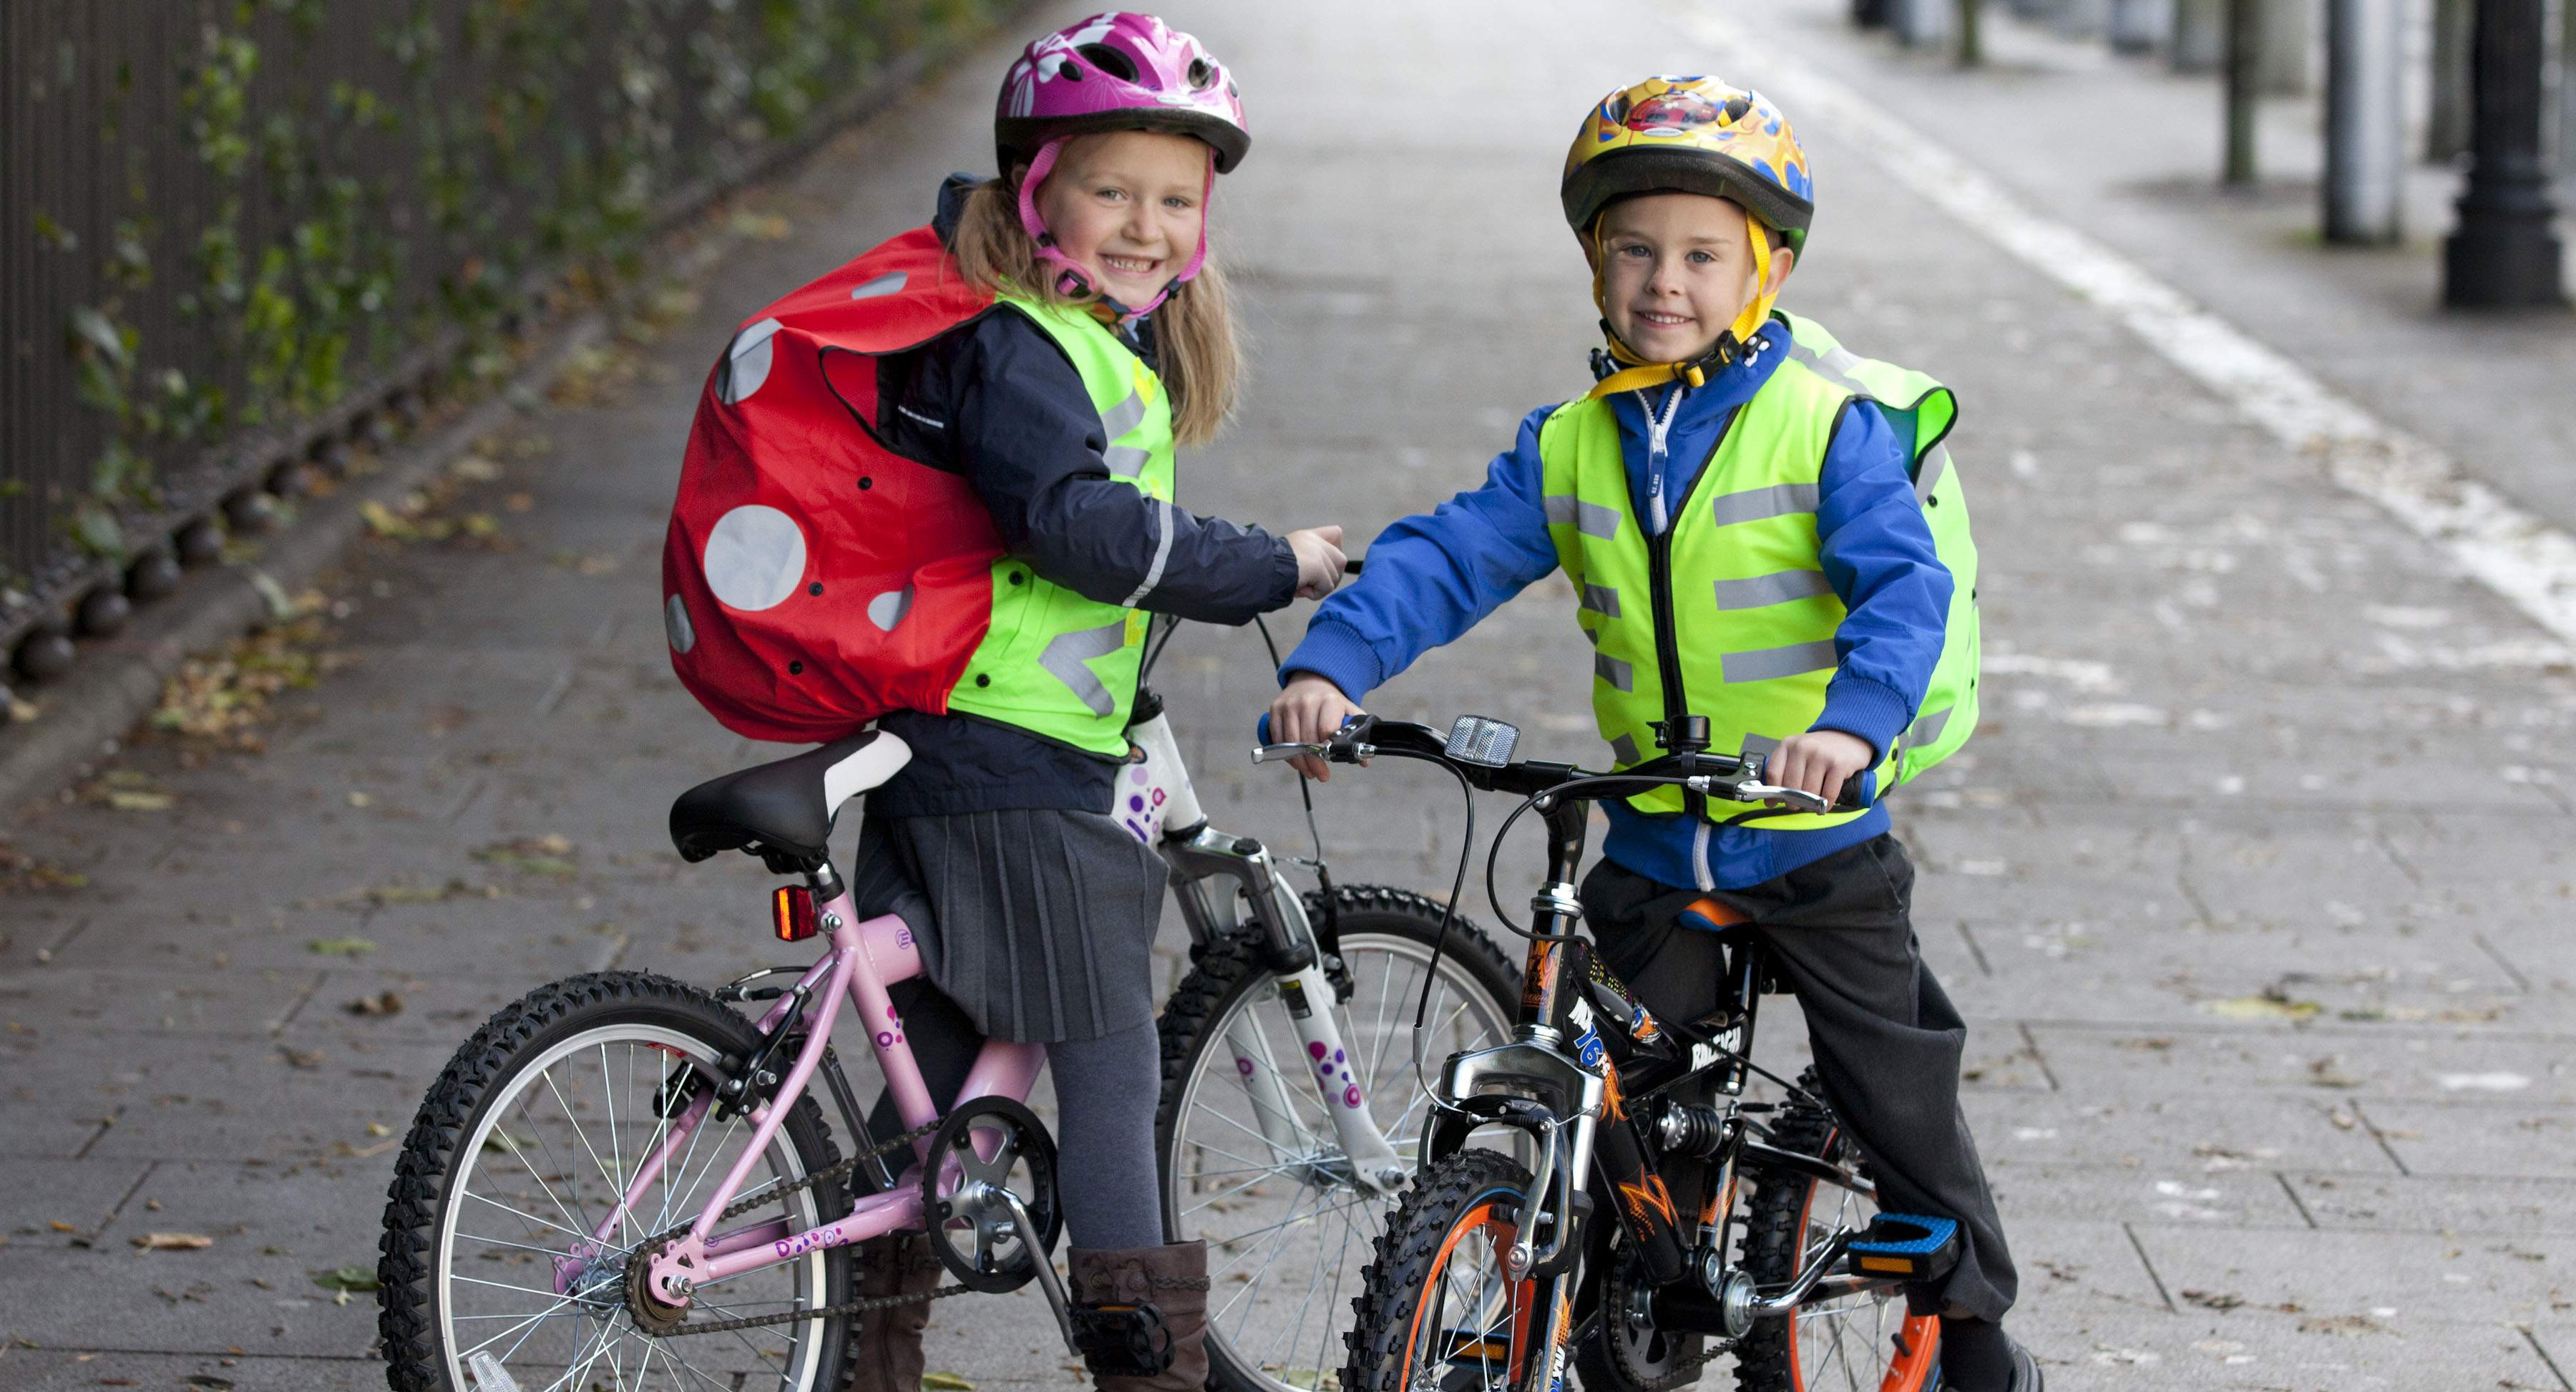 Спешиваться велосипедистам. Дети с велосипедом. Велосипедист ребенок. Велосипед школьник. Ребенок на велосипеде на дороге.